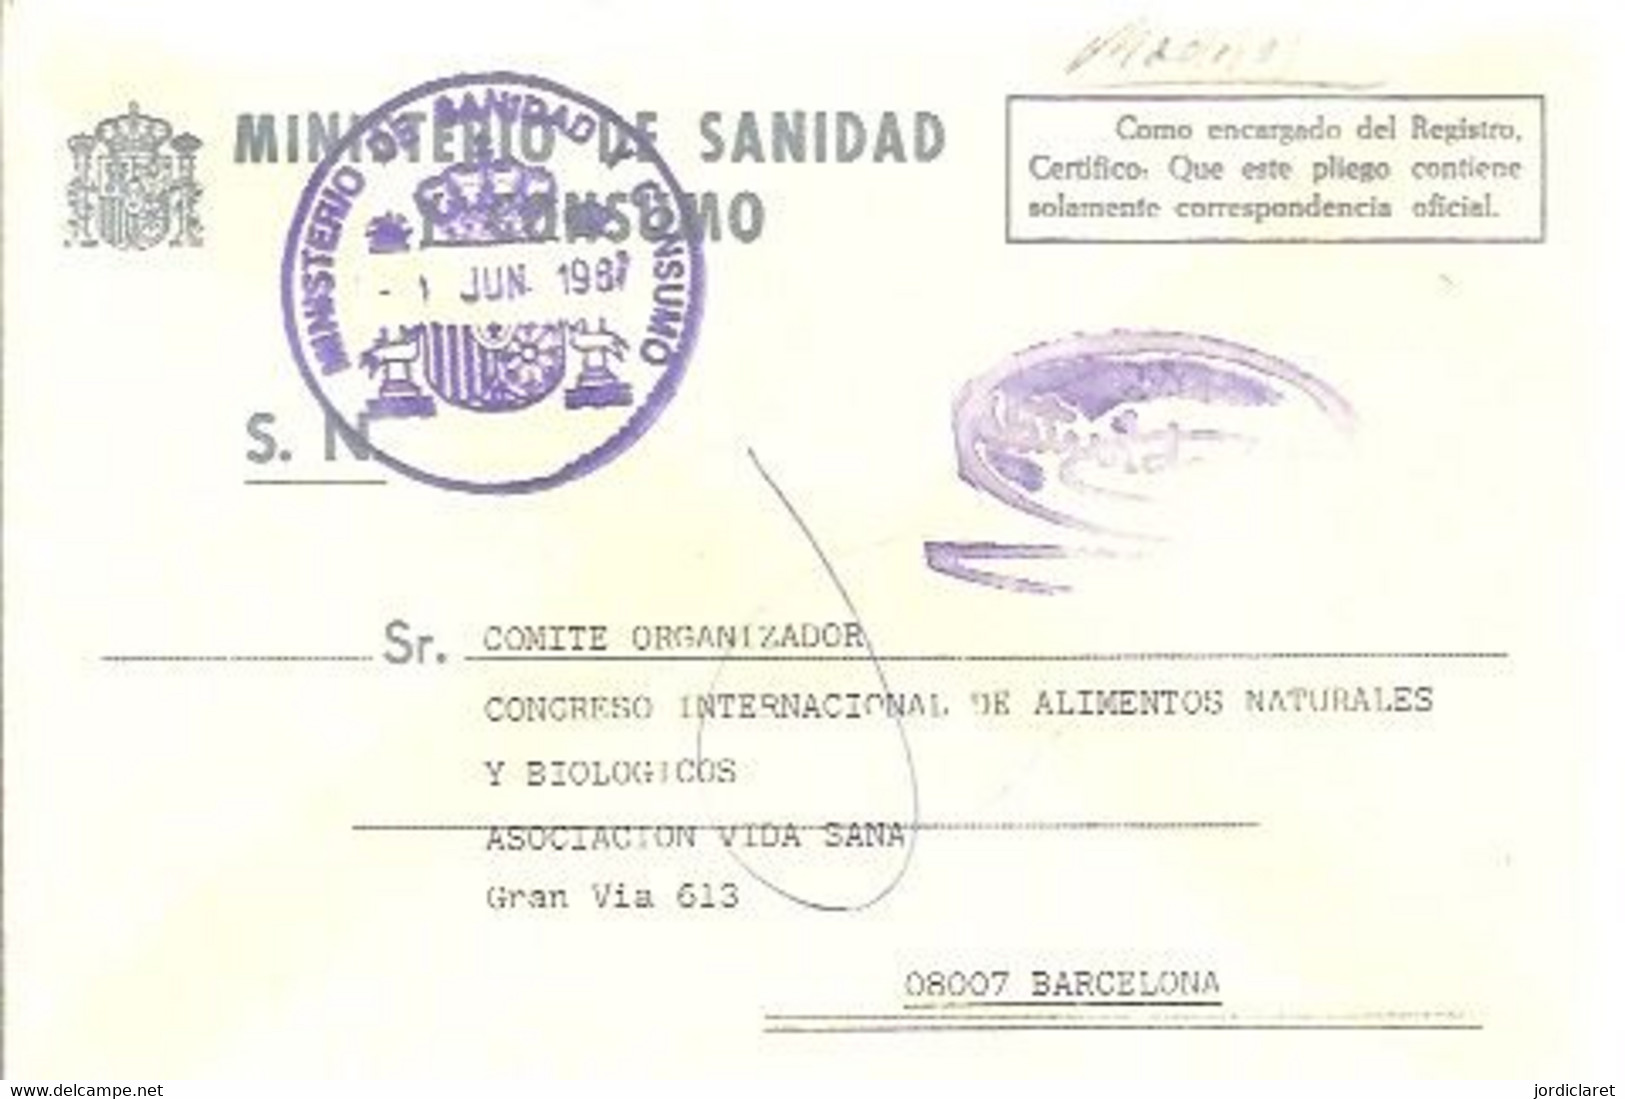 MINISTERIO DE SANIDAD Y CONSUMO 1987 - Franchise Postale